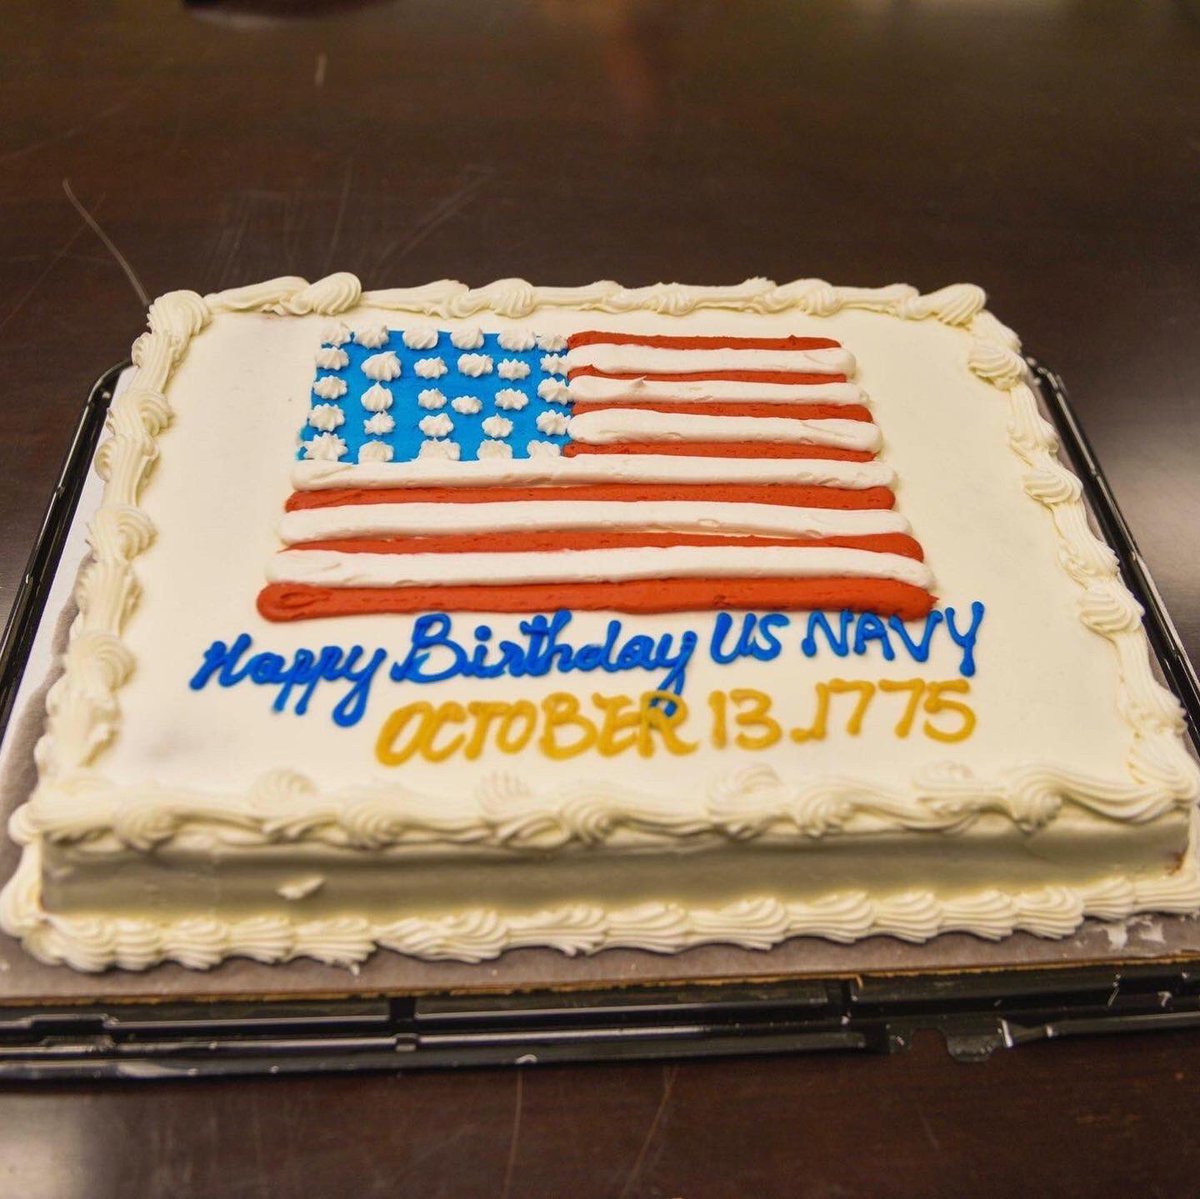 NTAG PNW Celebrates the Navy’s 247th Birthday! 🎉 🎂 #happybirthday #USNavy